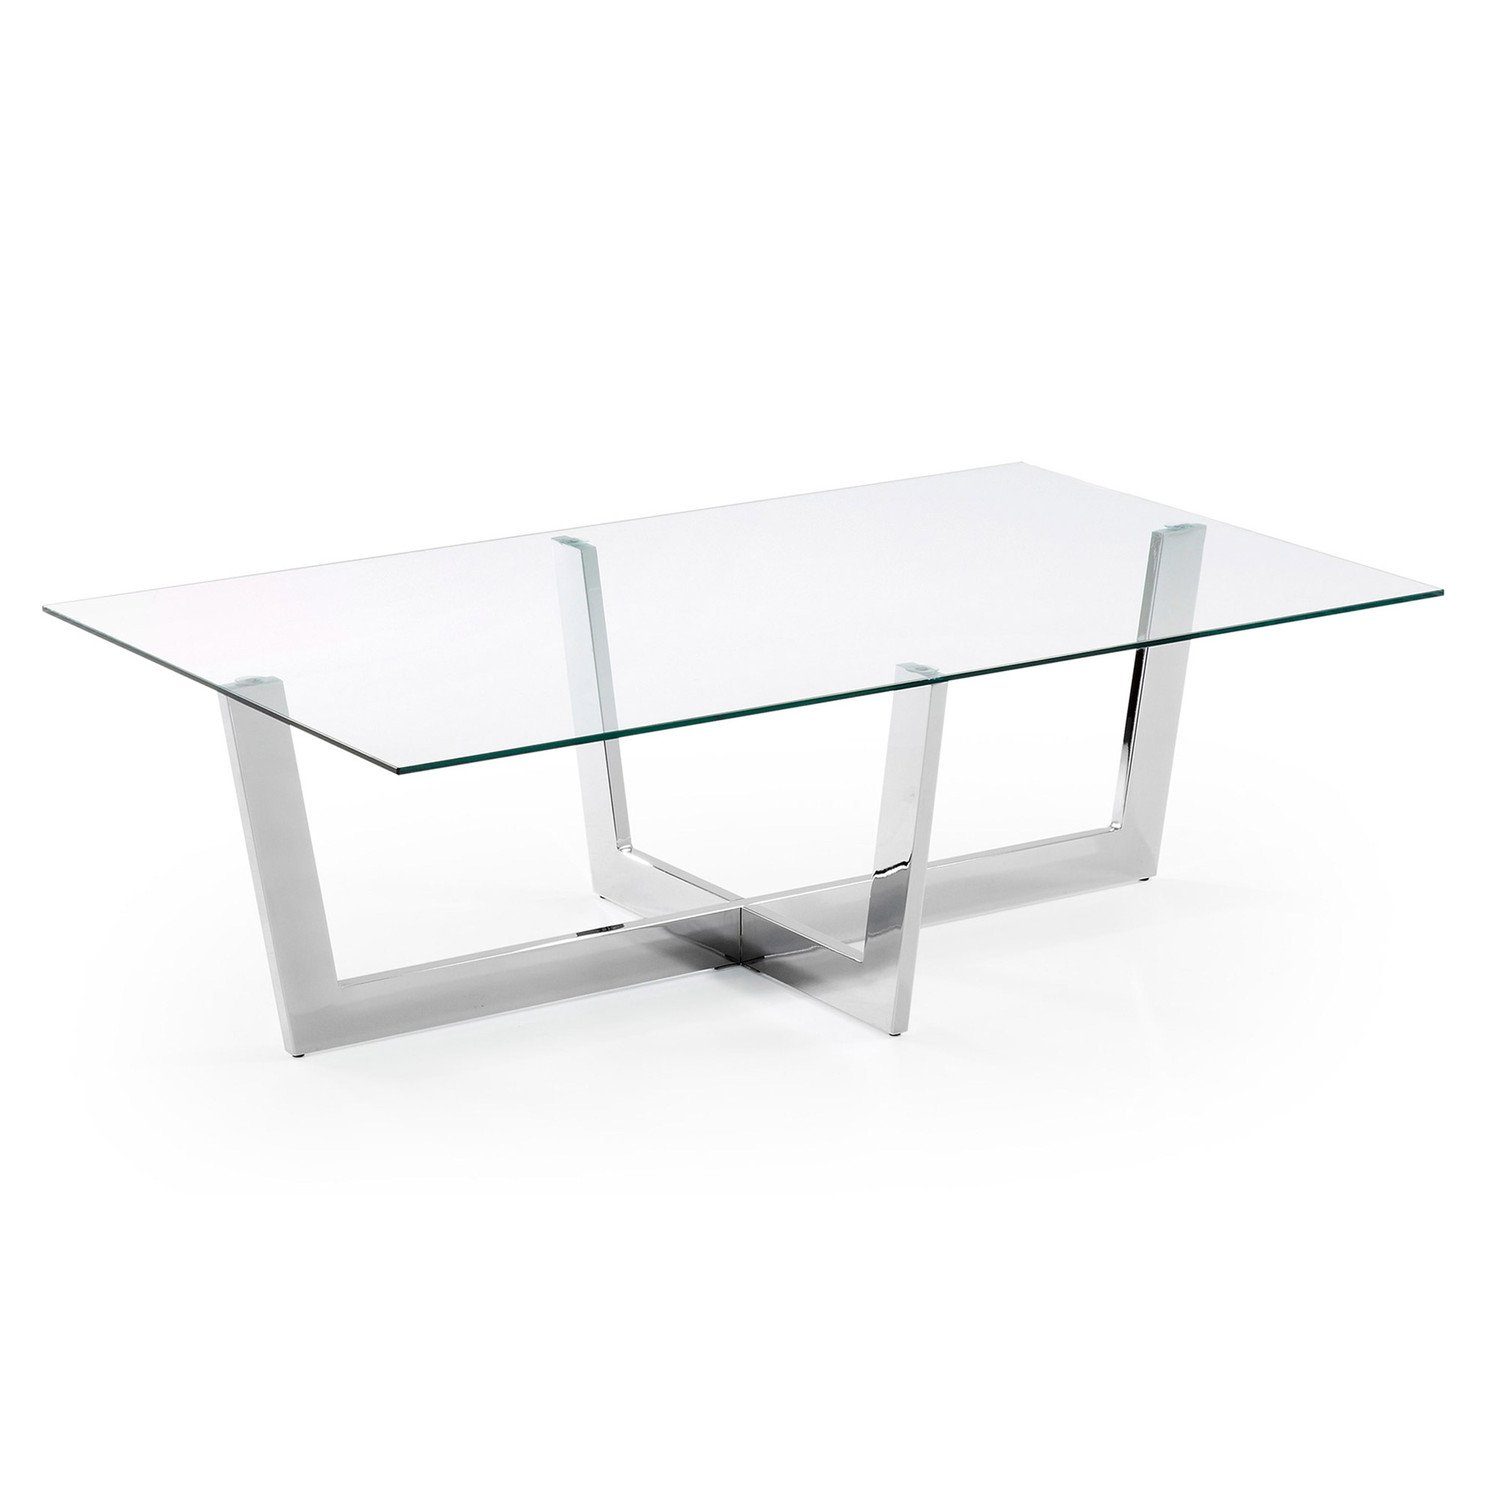 mit Couchtisch 120x70cm Glas Chrom-Finish Beistelltisch Tisch Plam Stahlstruktur Natur24